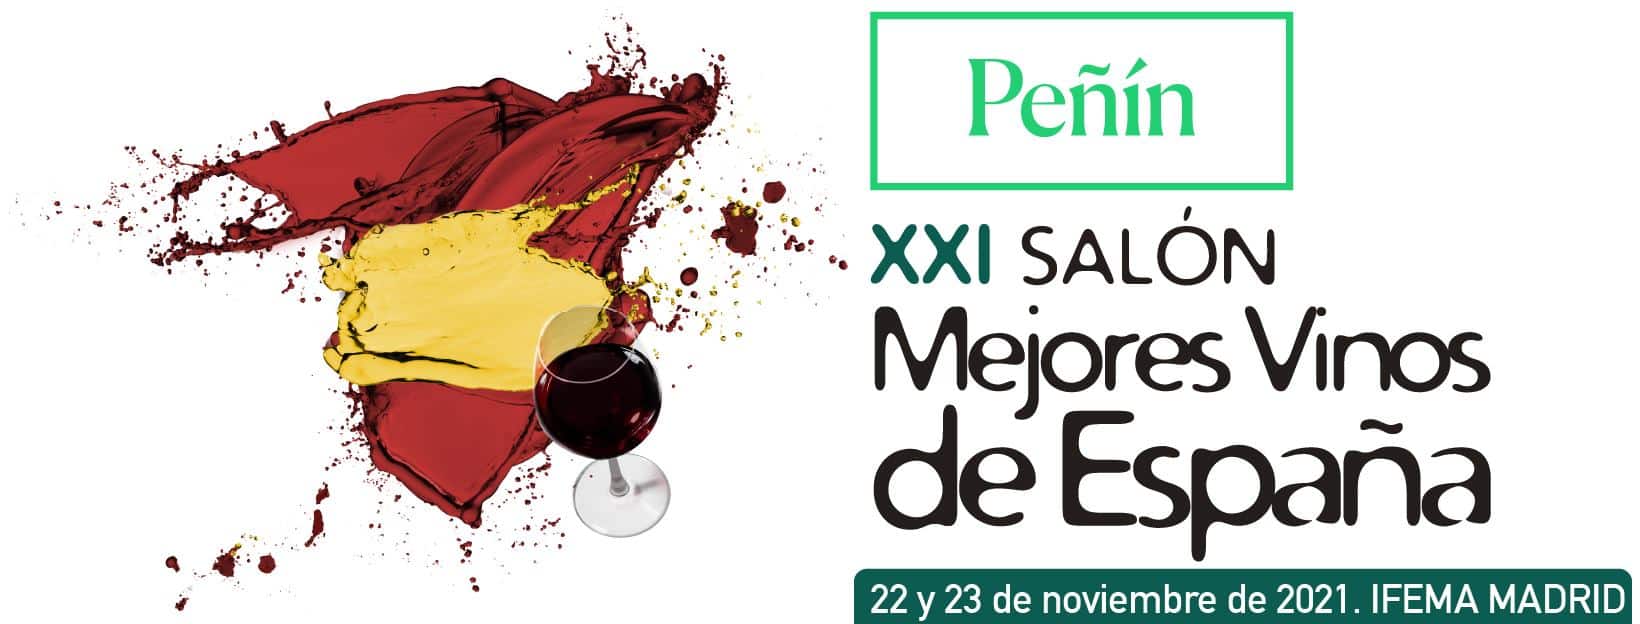 El Salón de los Mejores Vinos de España celebra su XXI edición